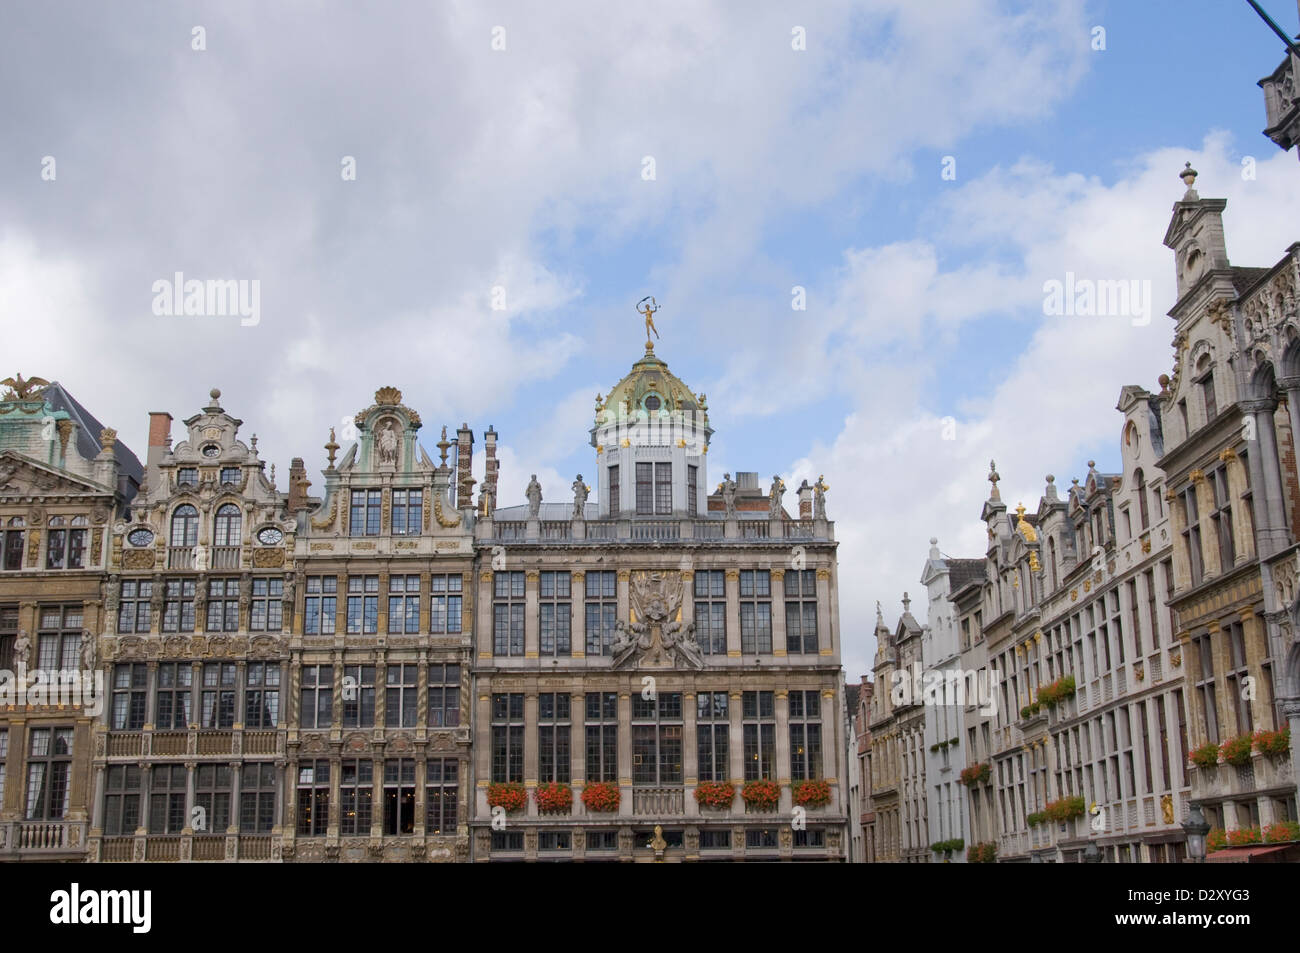 Placa Grande in Brussels Belgium Stock Photo